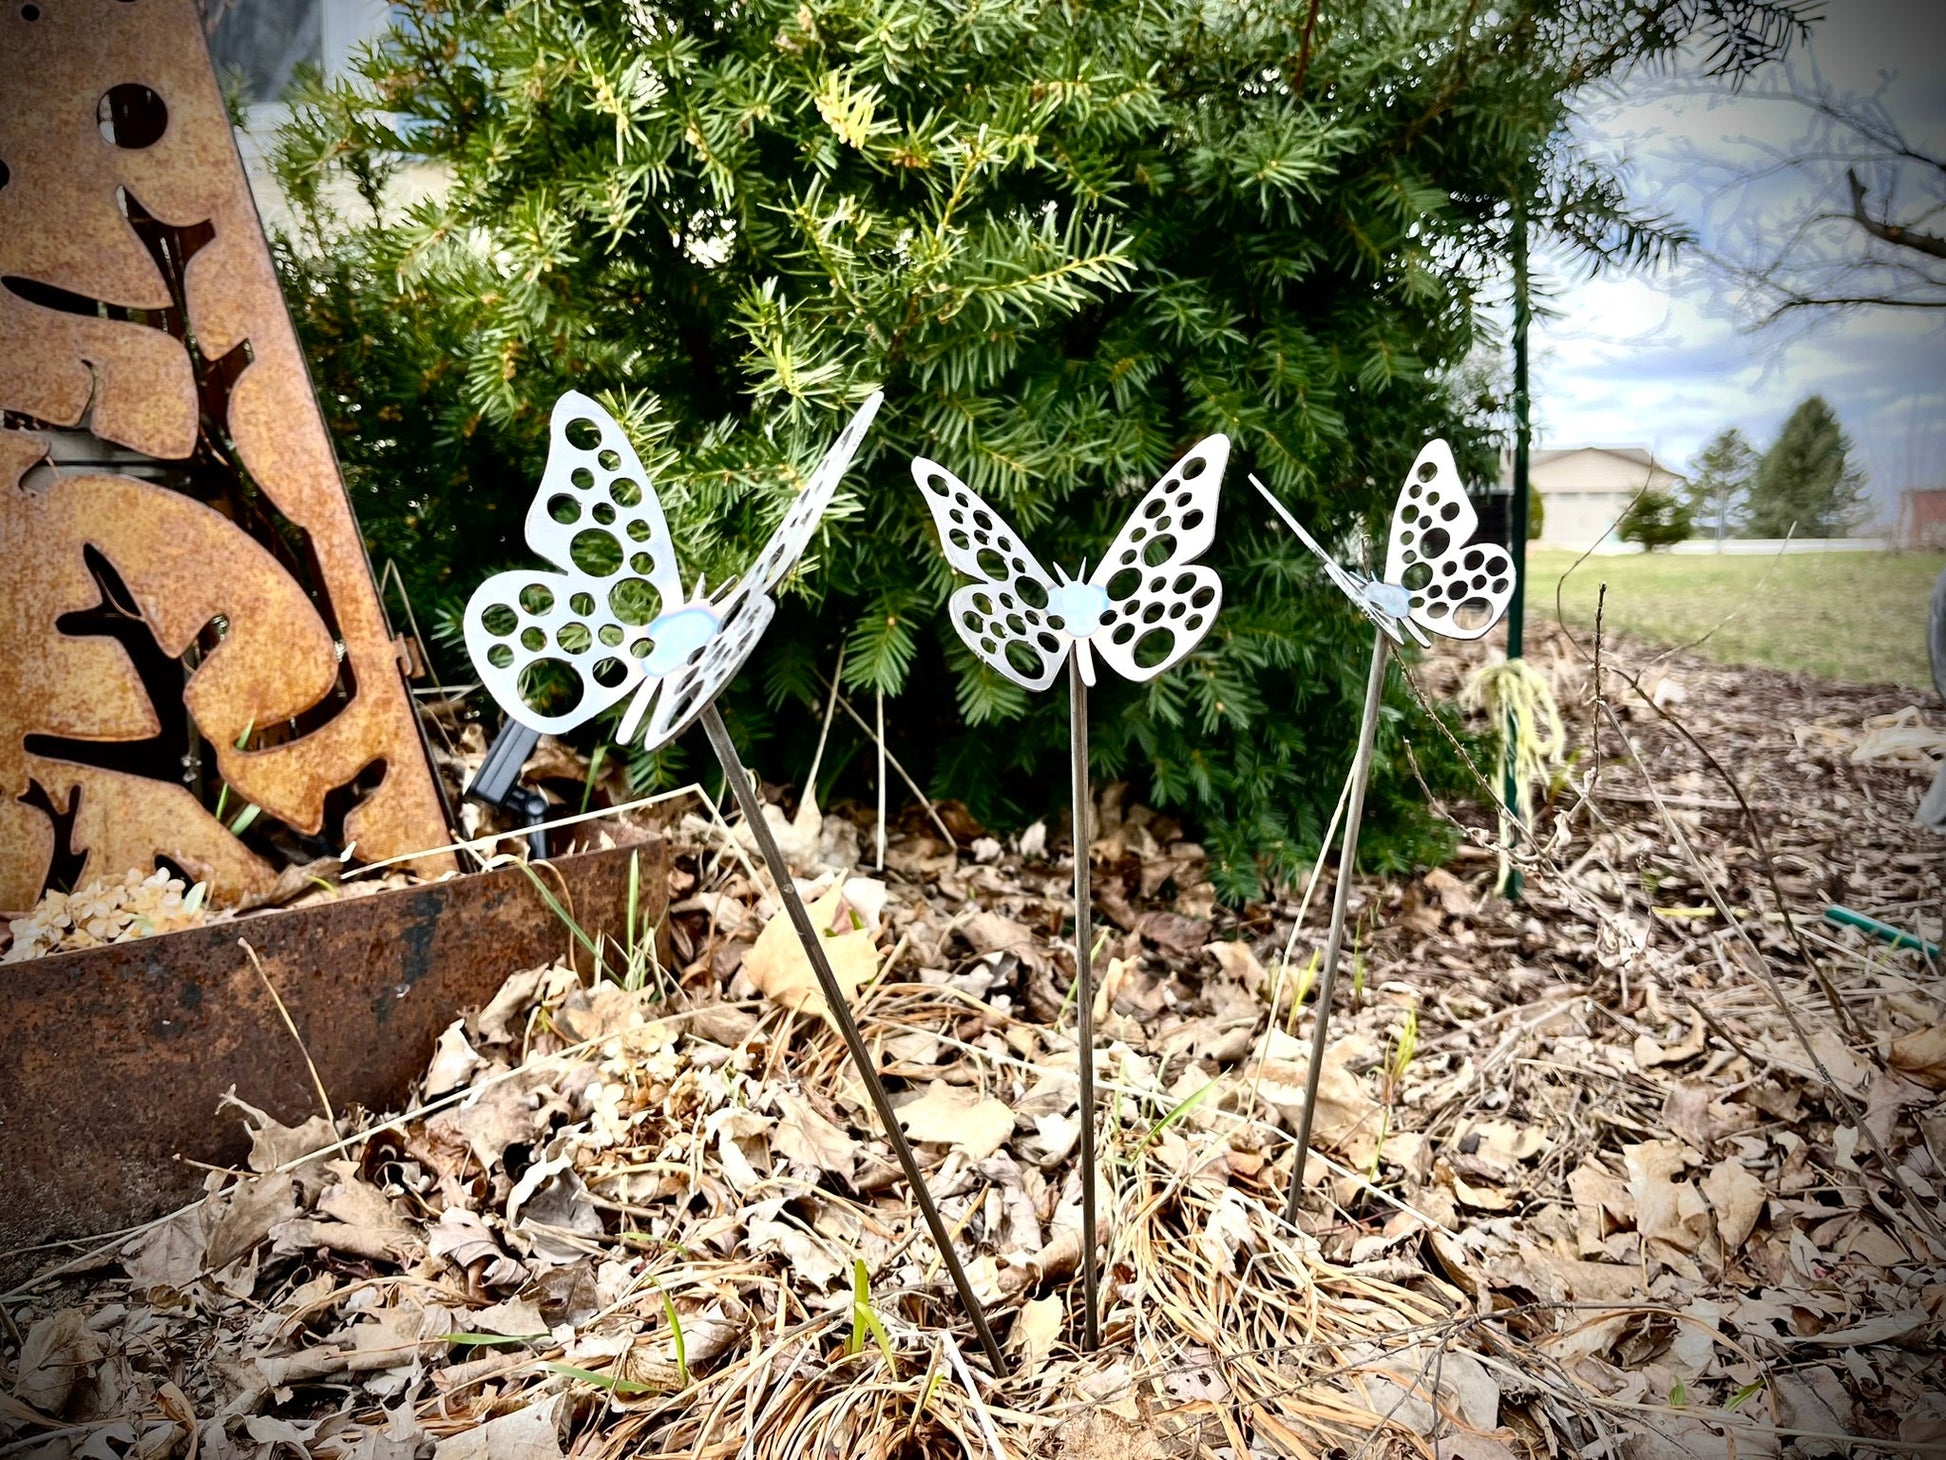 3-Pack Metal Butterflies w/ Stem - butterfly garden art - garden - Northern Forge, LLC